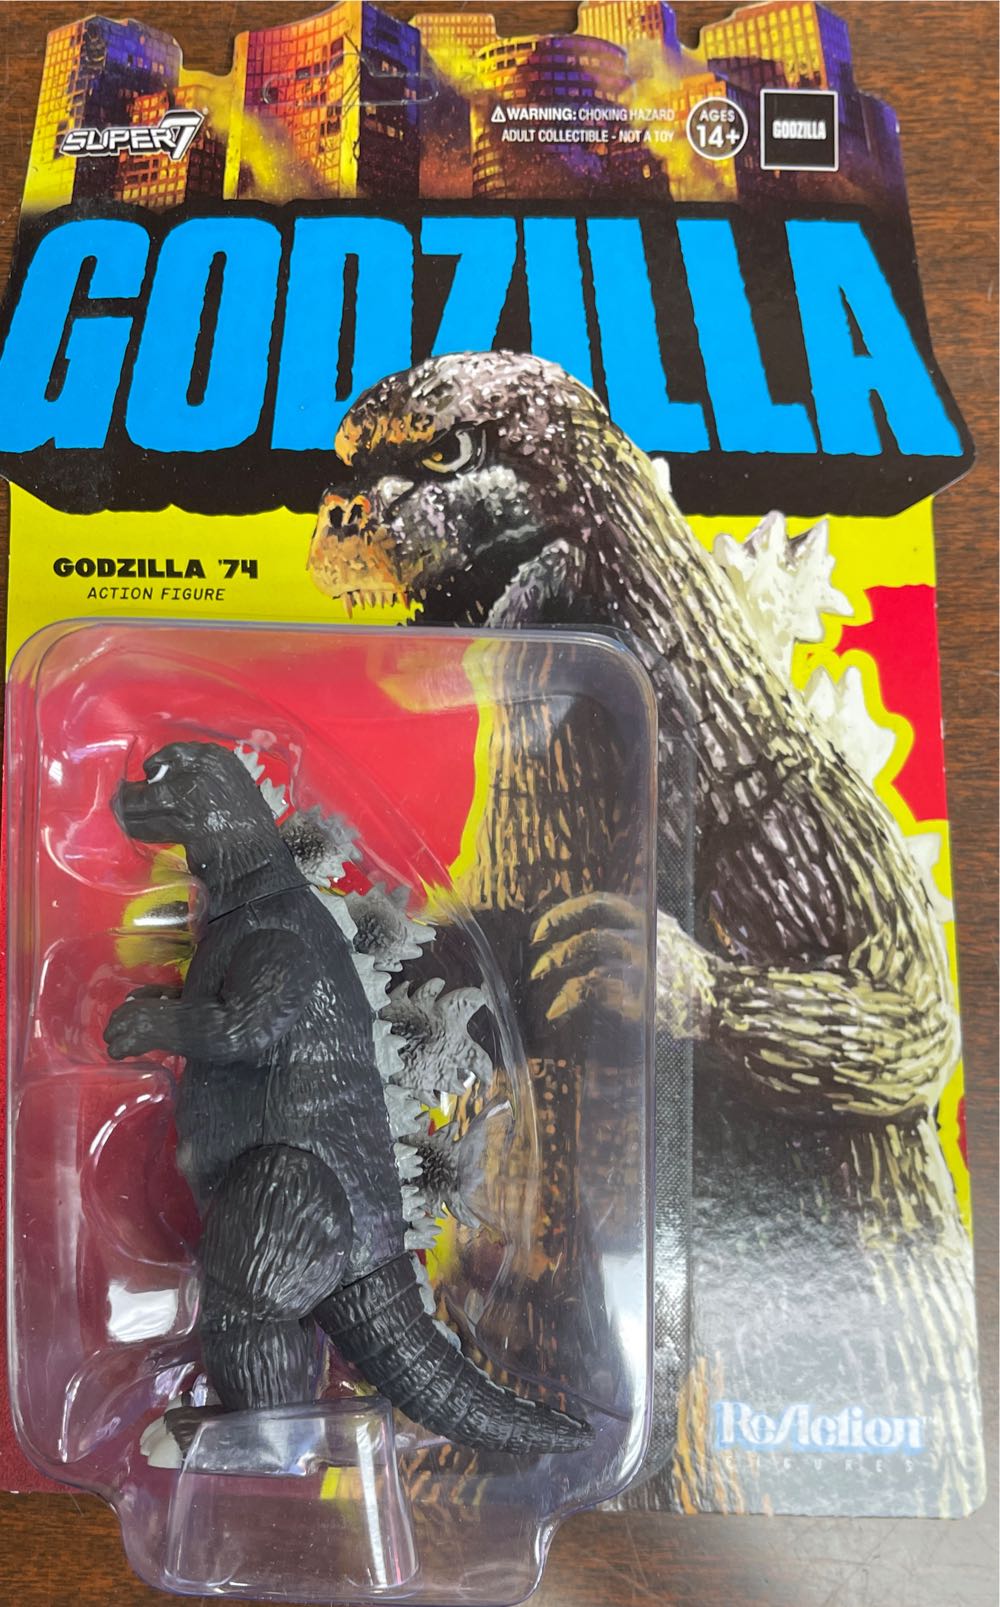 Super 7 - Godzilla (’74) - Super7 (Godzilla) action figure collectible [Barcode 840049830318] - Main Image 1